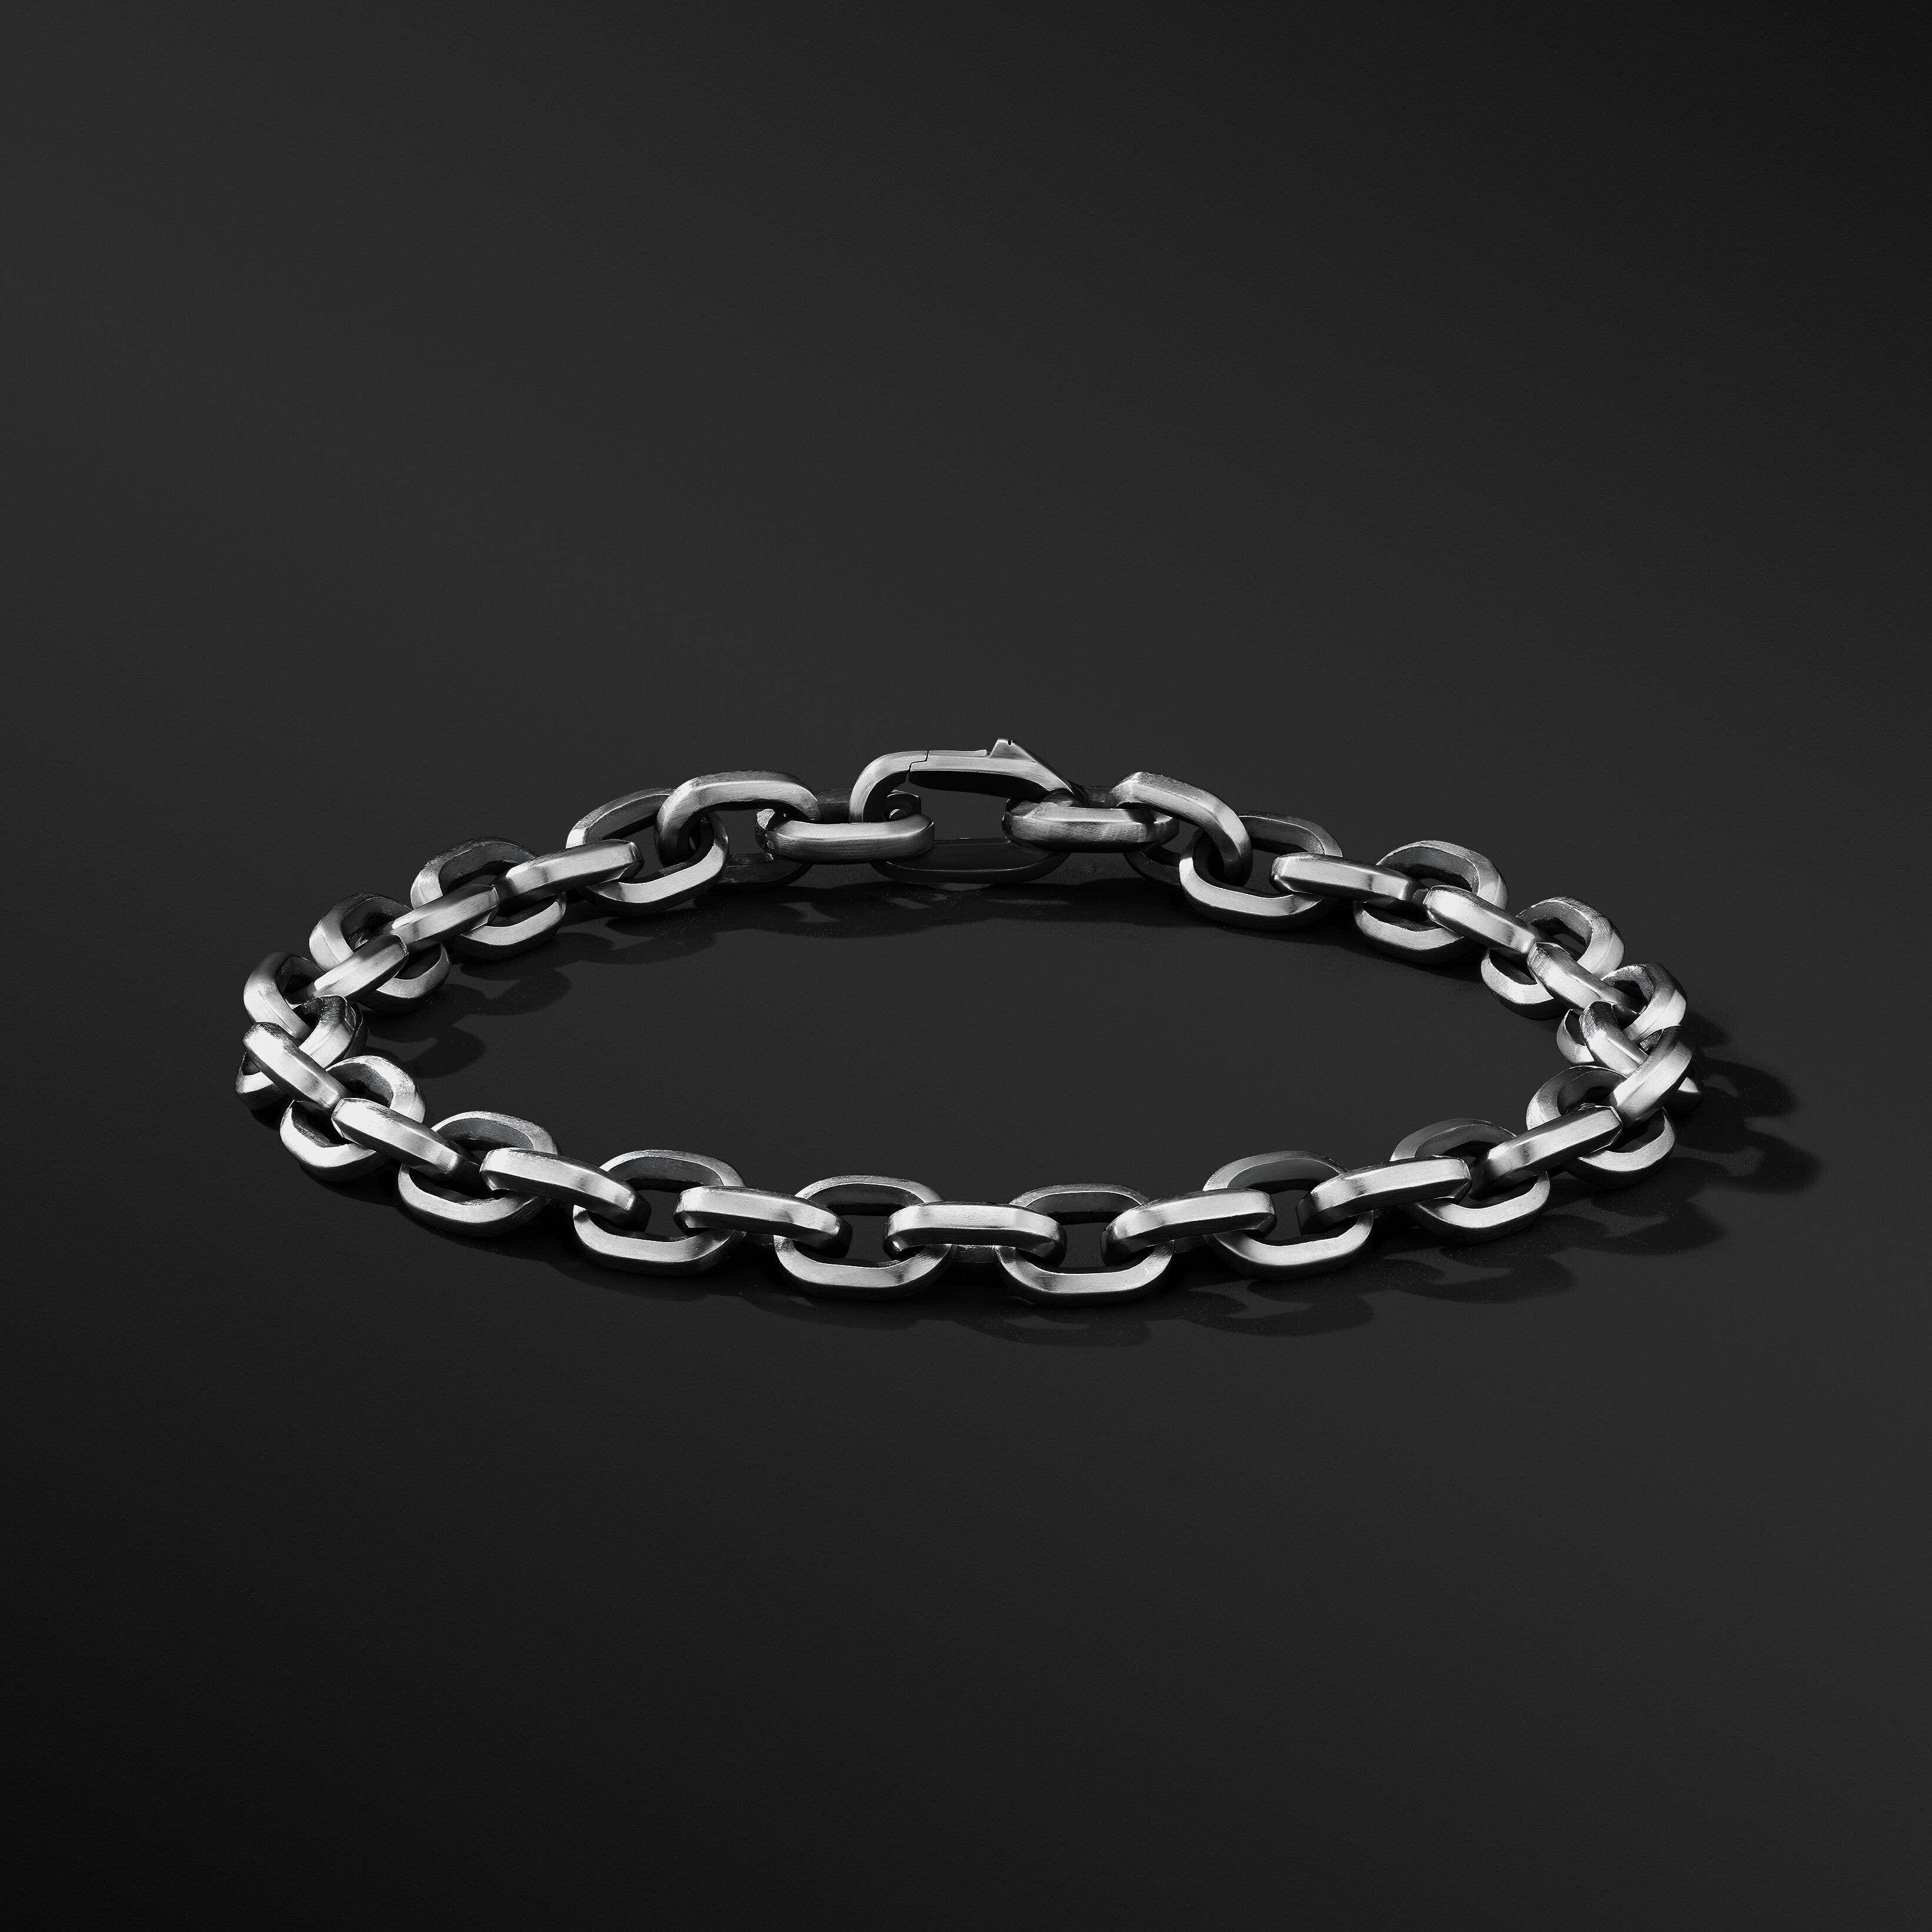 Deco Chain Link Bracelet